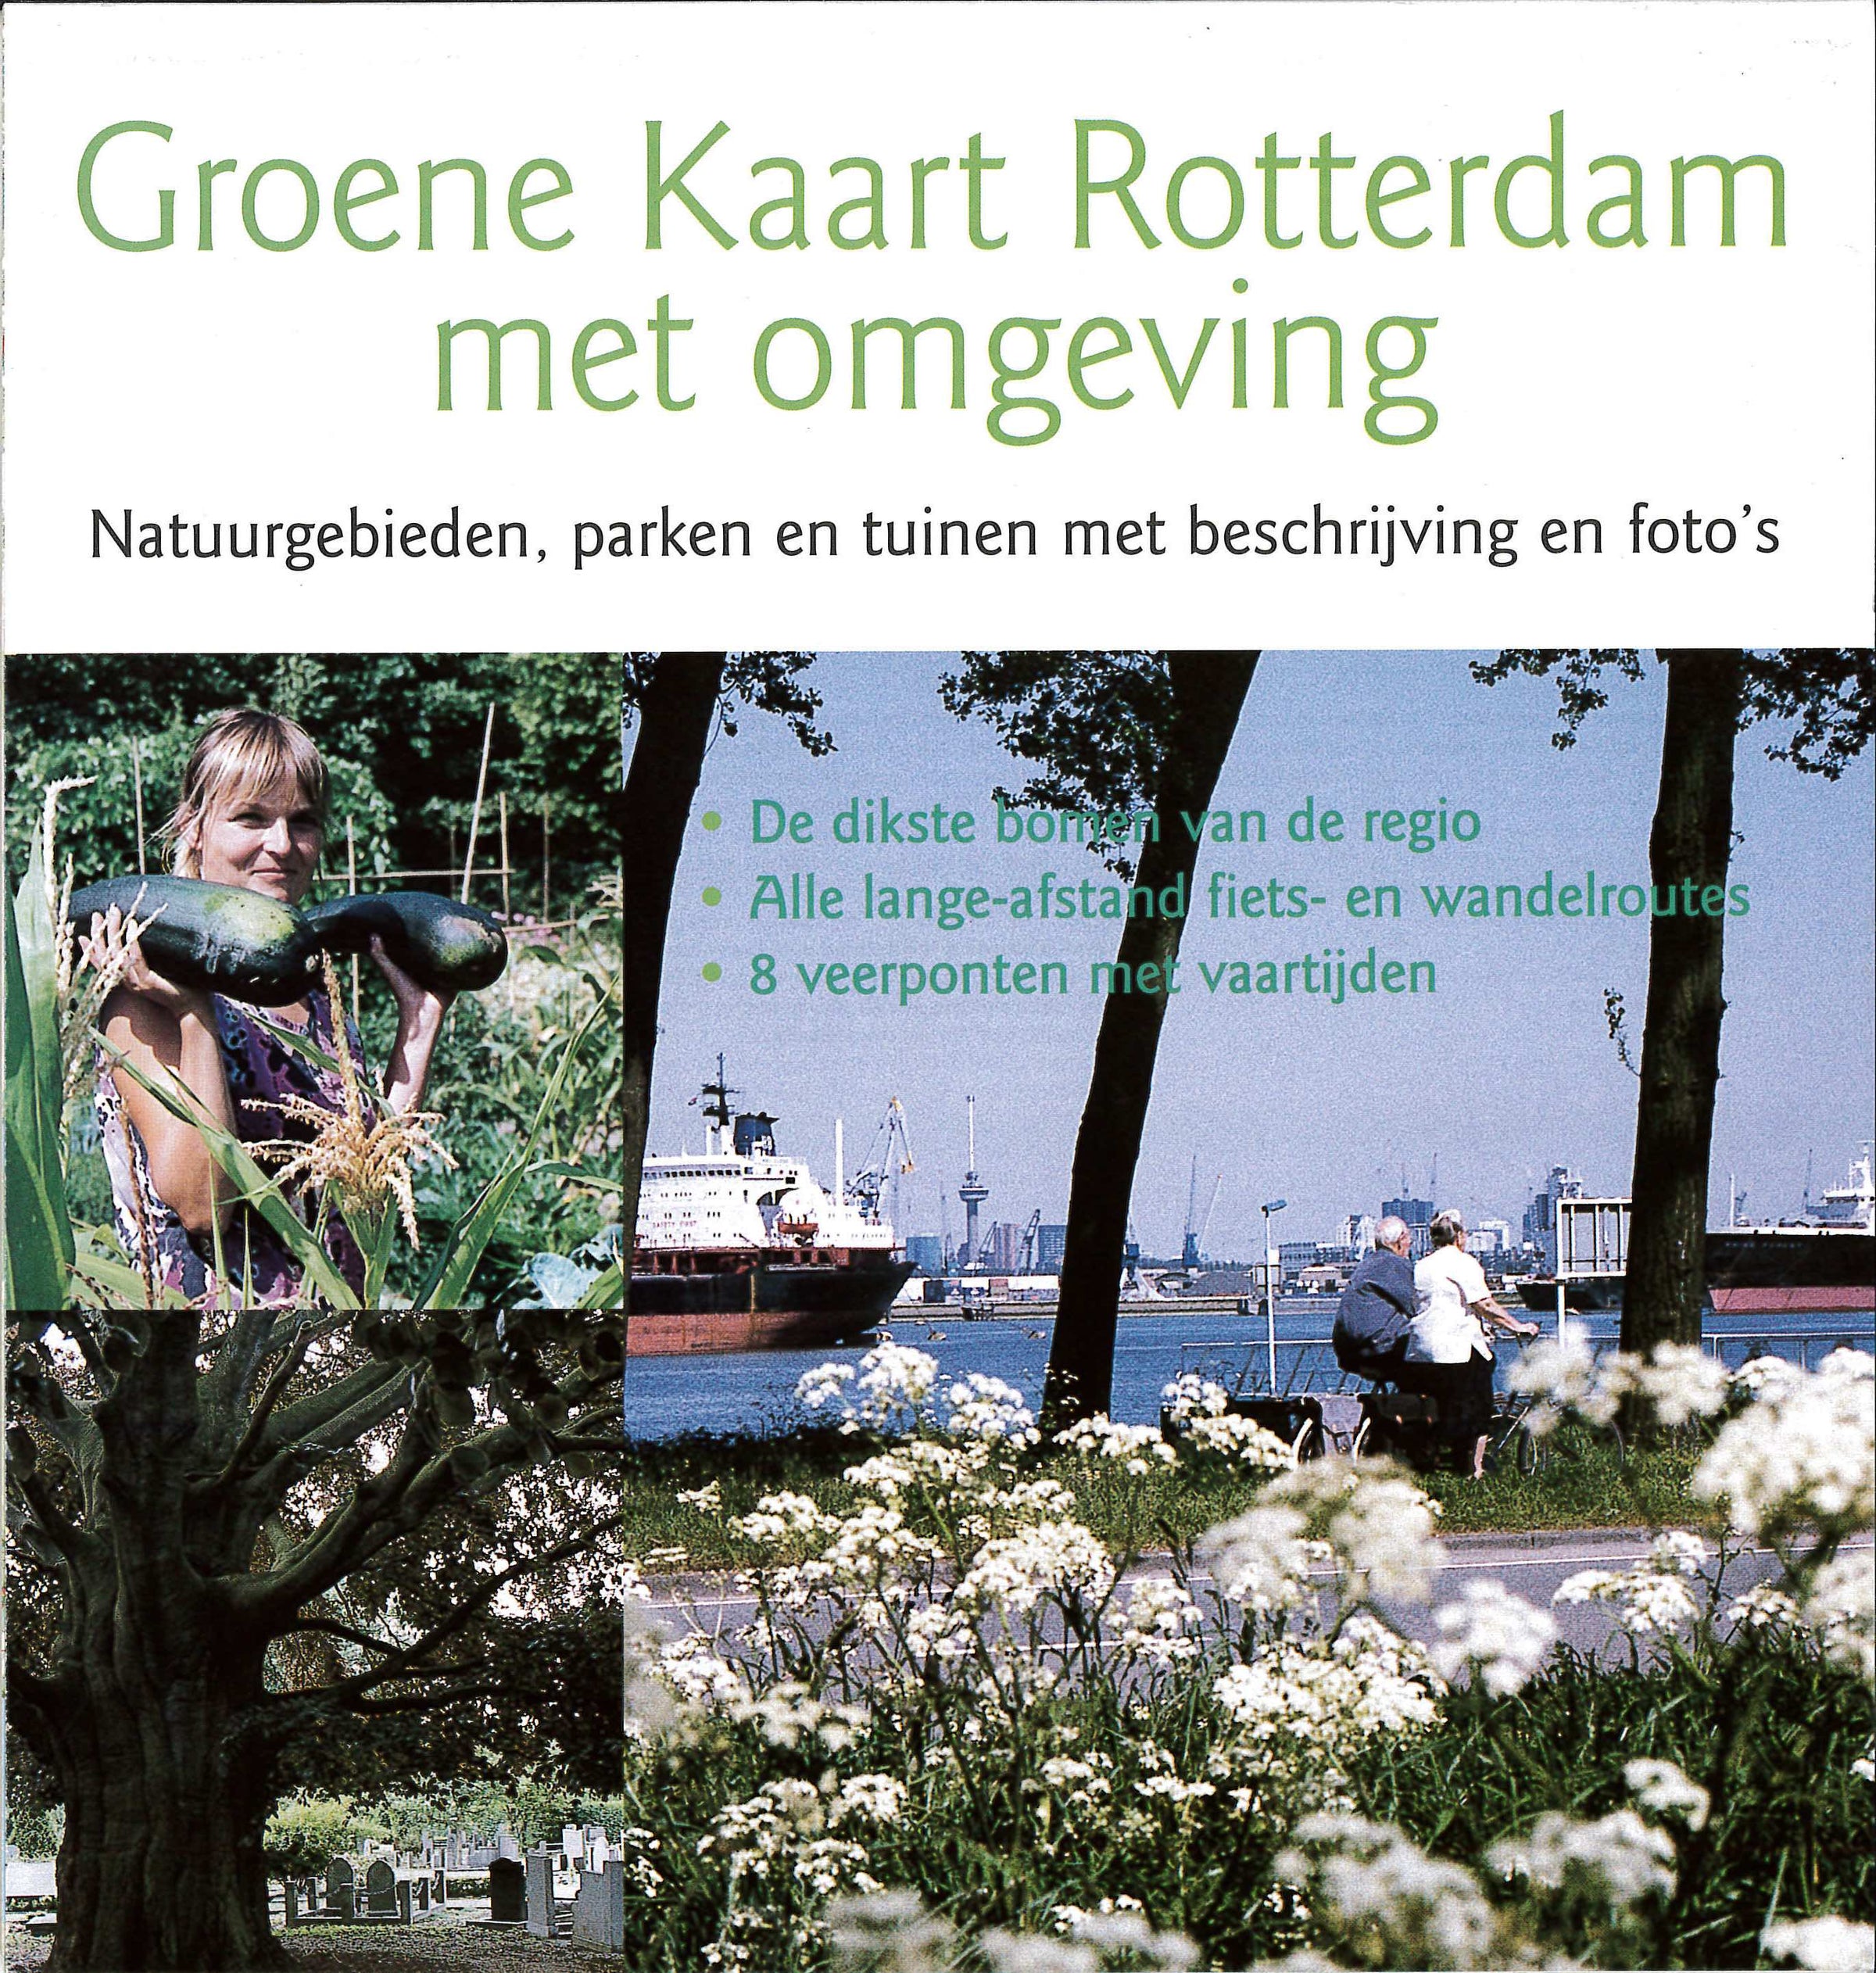 Groene Kaart Rotterdam met omgeving